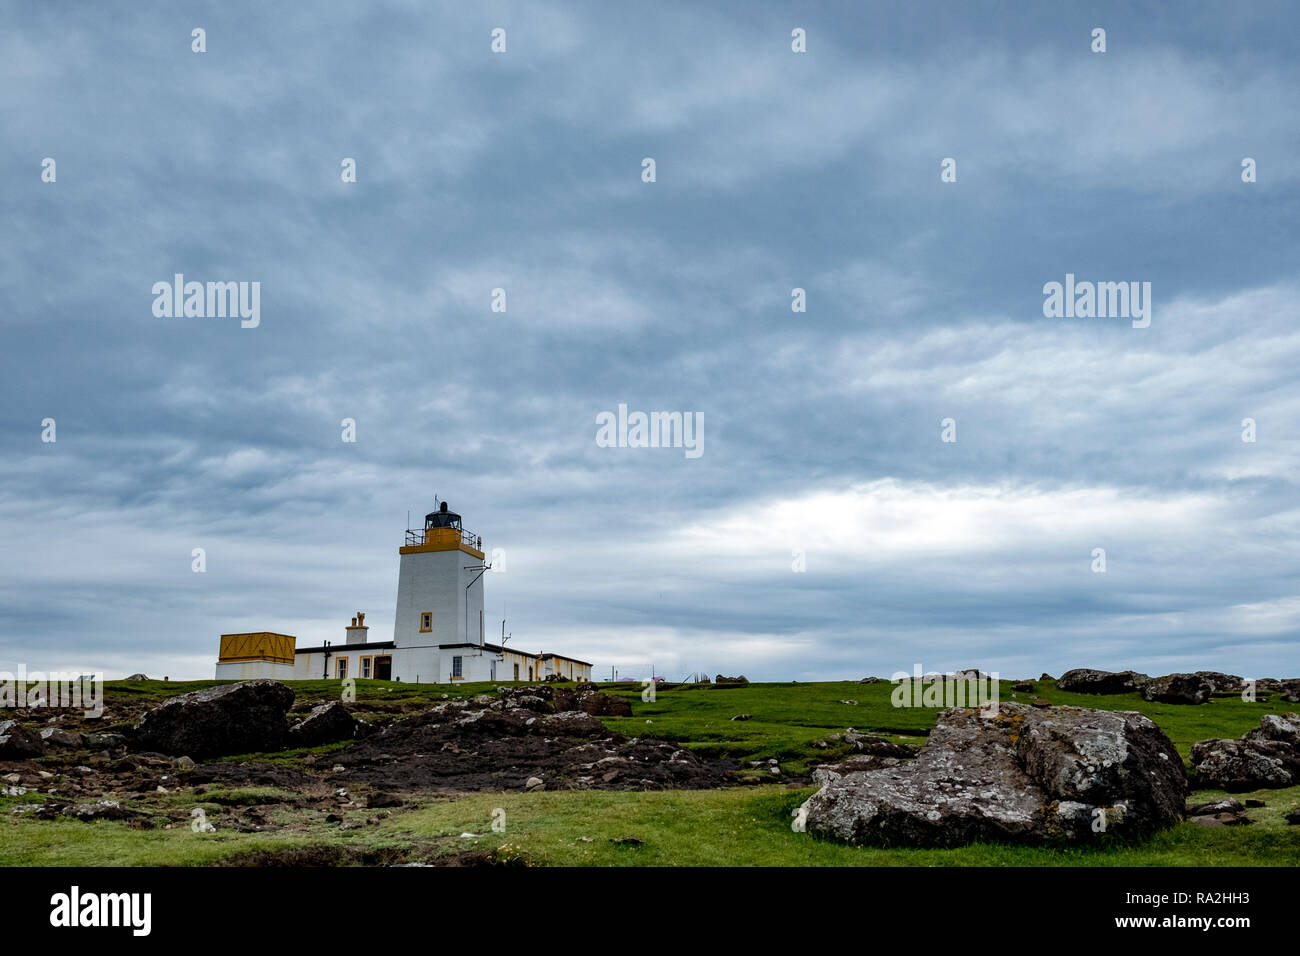 Stevenson le phare sur la côte nord des îles Shetland, d'Écosse et donnant sur l'Océan Atlantique Banque D'Images